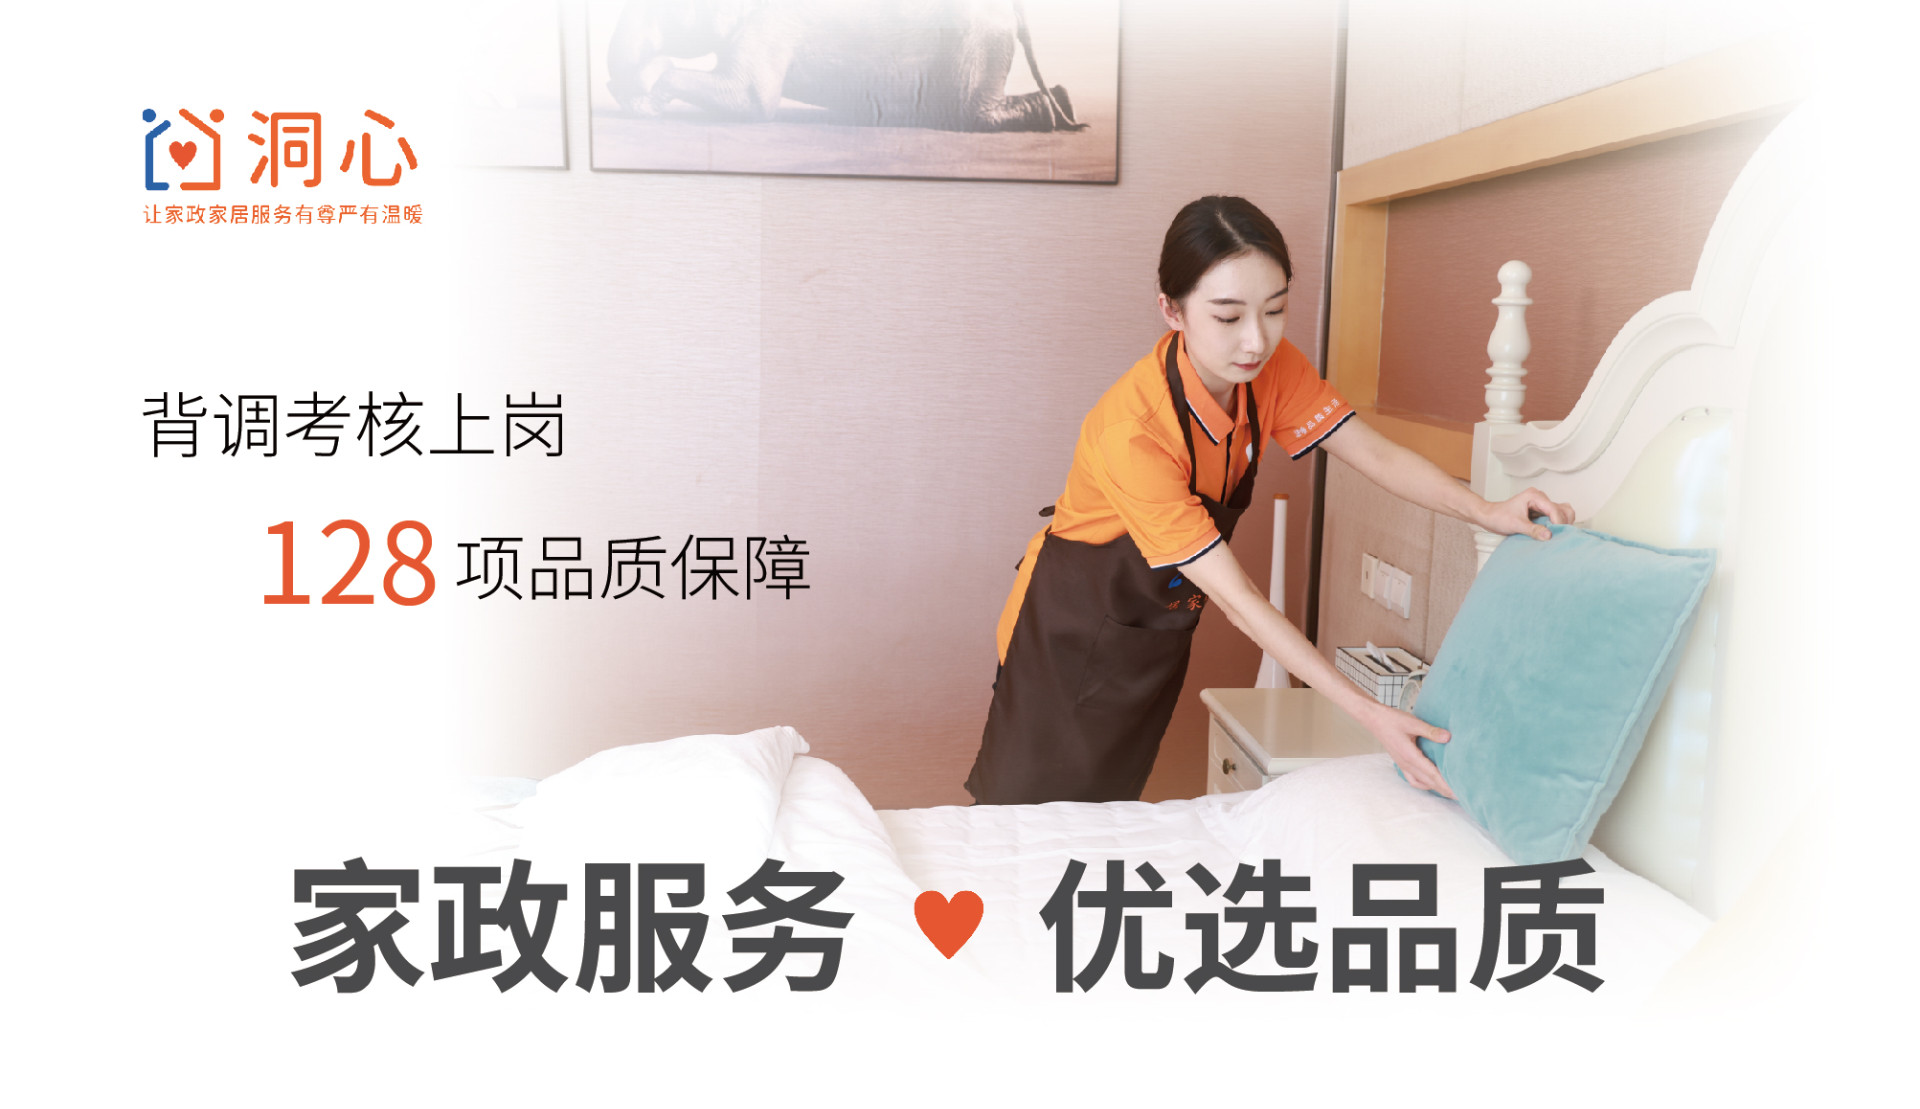 北京k10赛车平台官方网站上线洞心平台 让家政家居服务有尊严又温暖